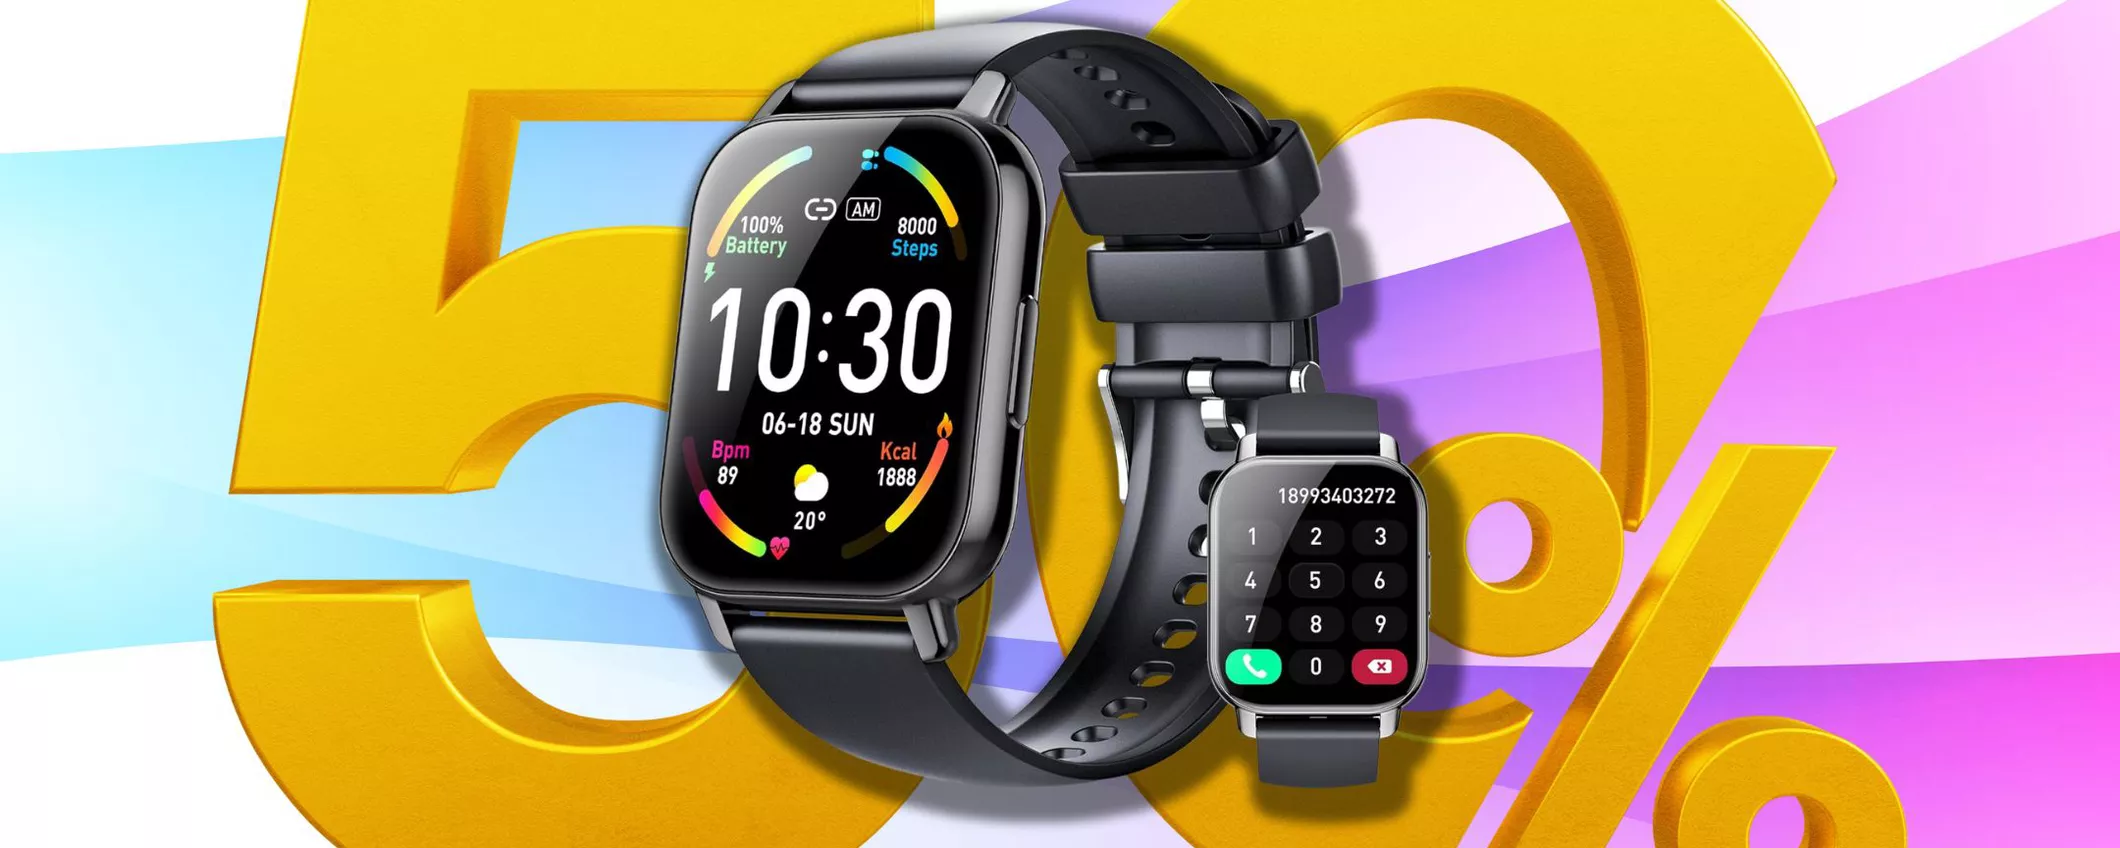 PREZZO RIDICOLO per Smartwatch compatibile con iOS: lo paghi solo 31€!